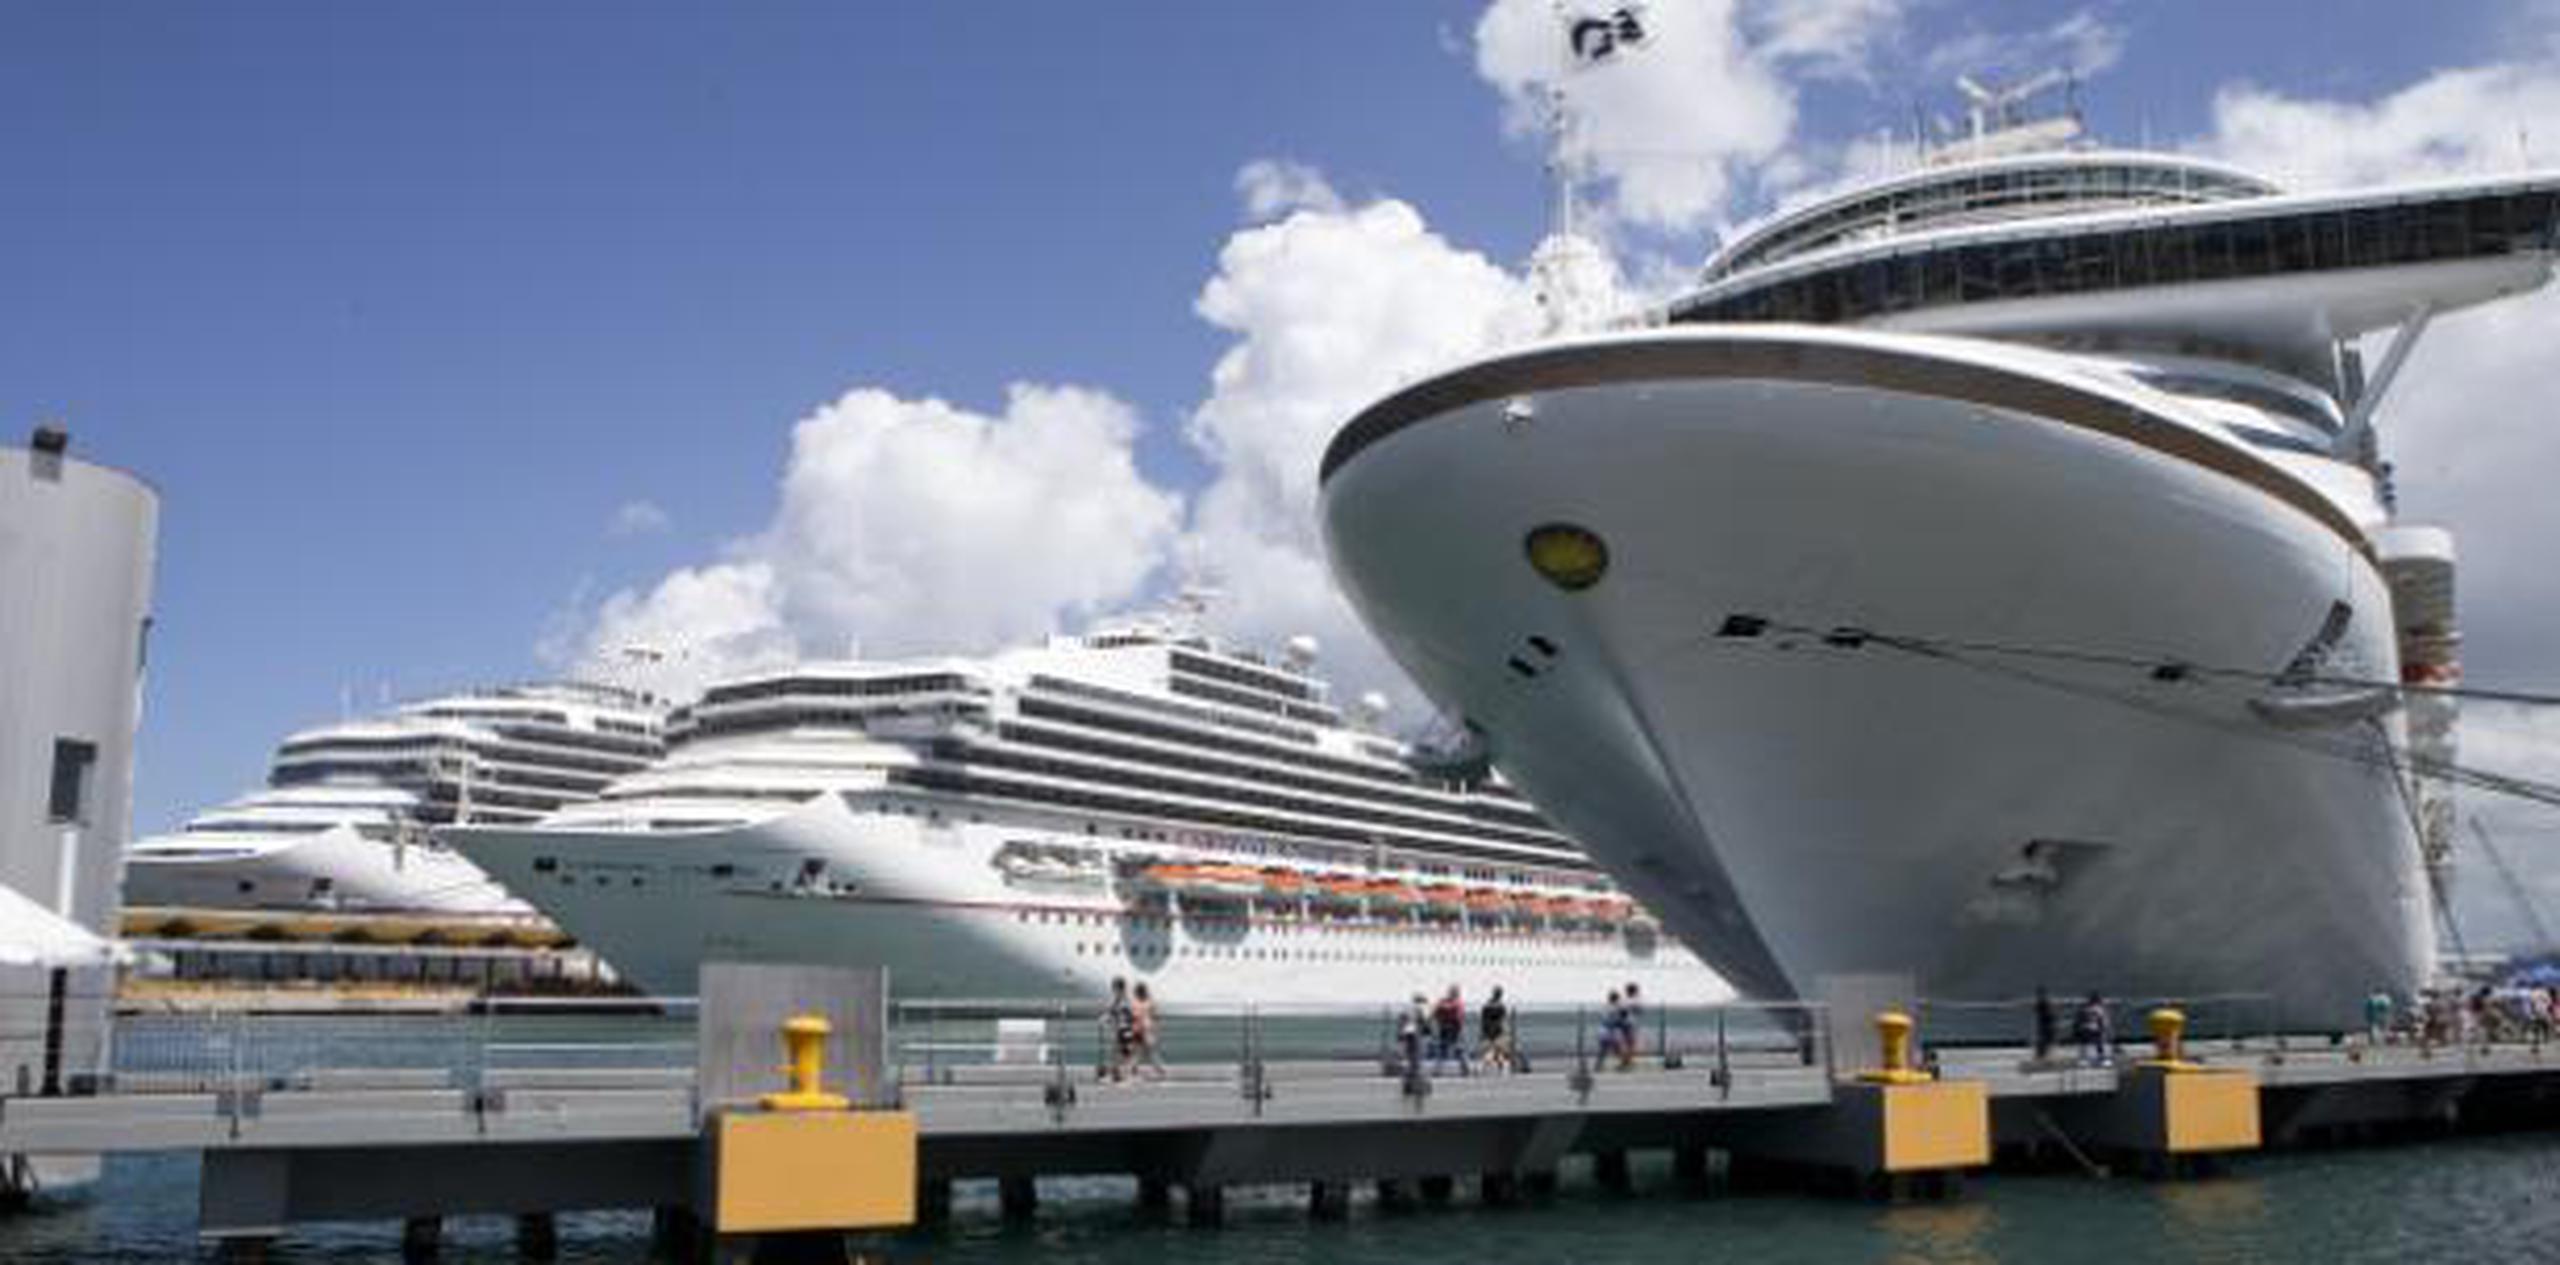 Los turistas son pasajeros de los cruceros Anthem of the Seas, Westerdam, Carnival Glory, Carnival Breeze y el Celebrity Silhouette. (Archivo)